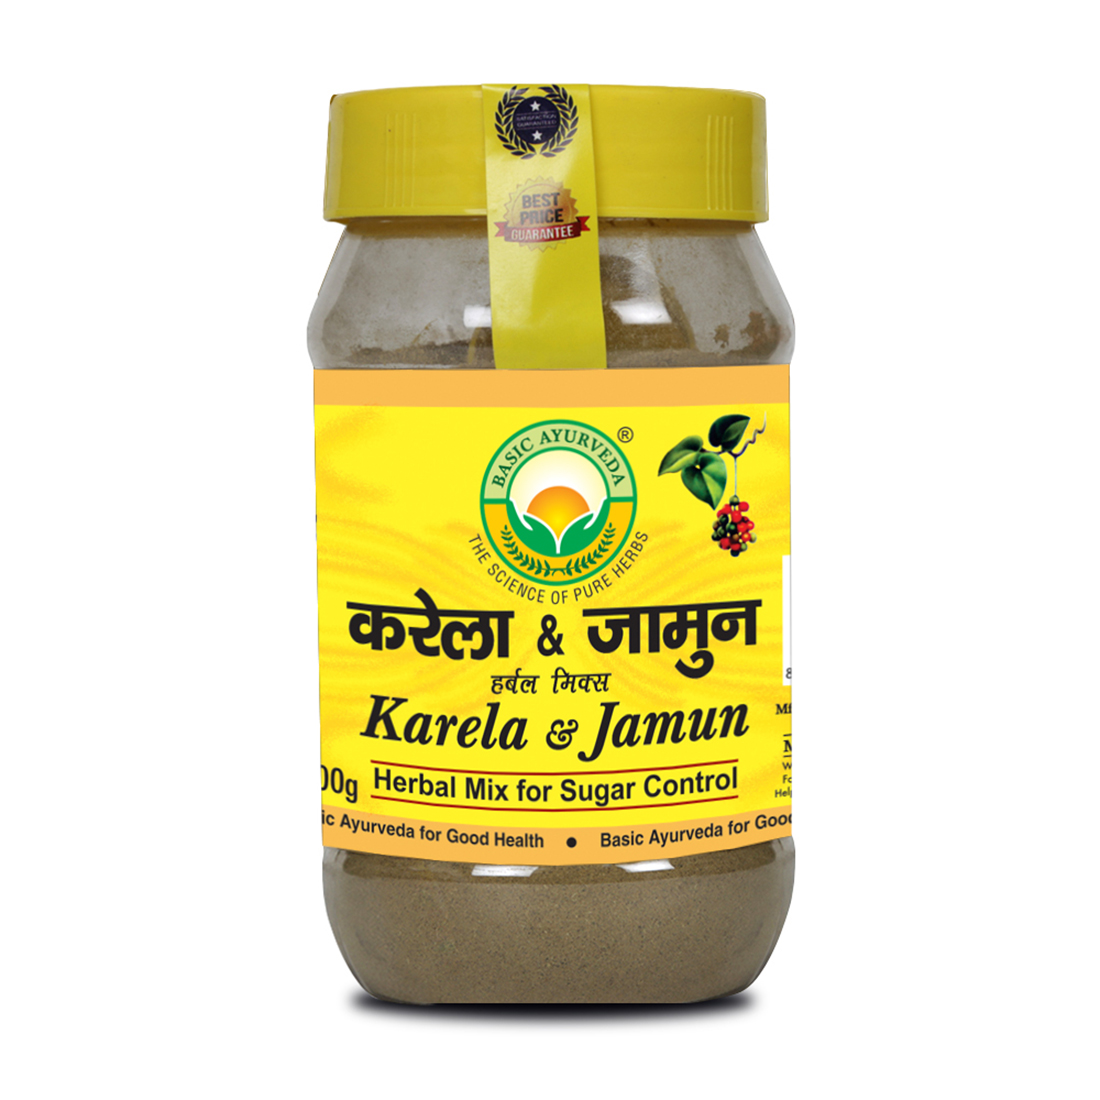 Karela & Jamun Herbal Mix Powder